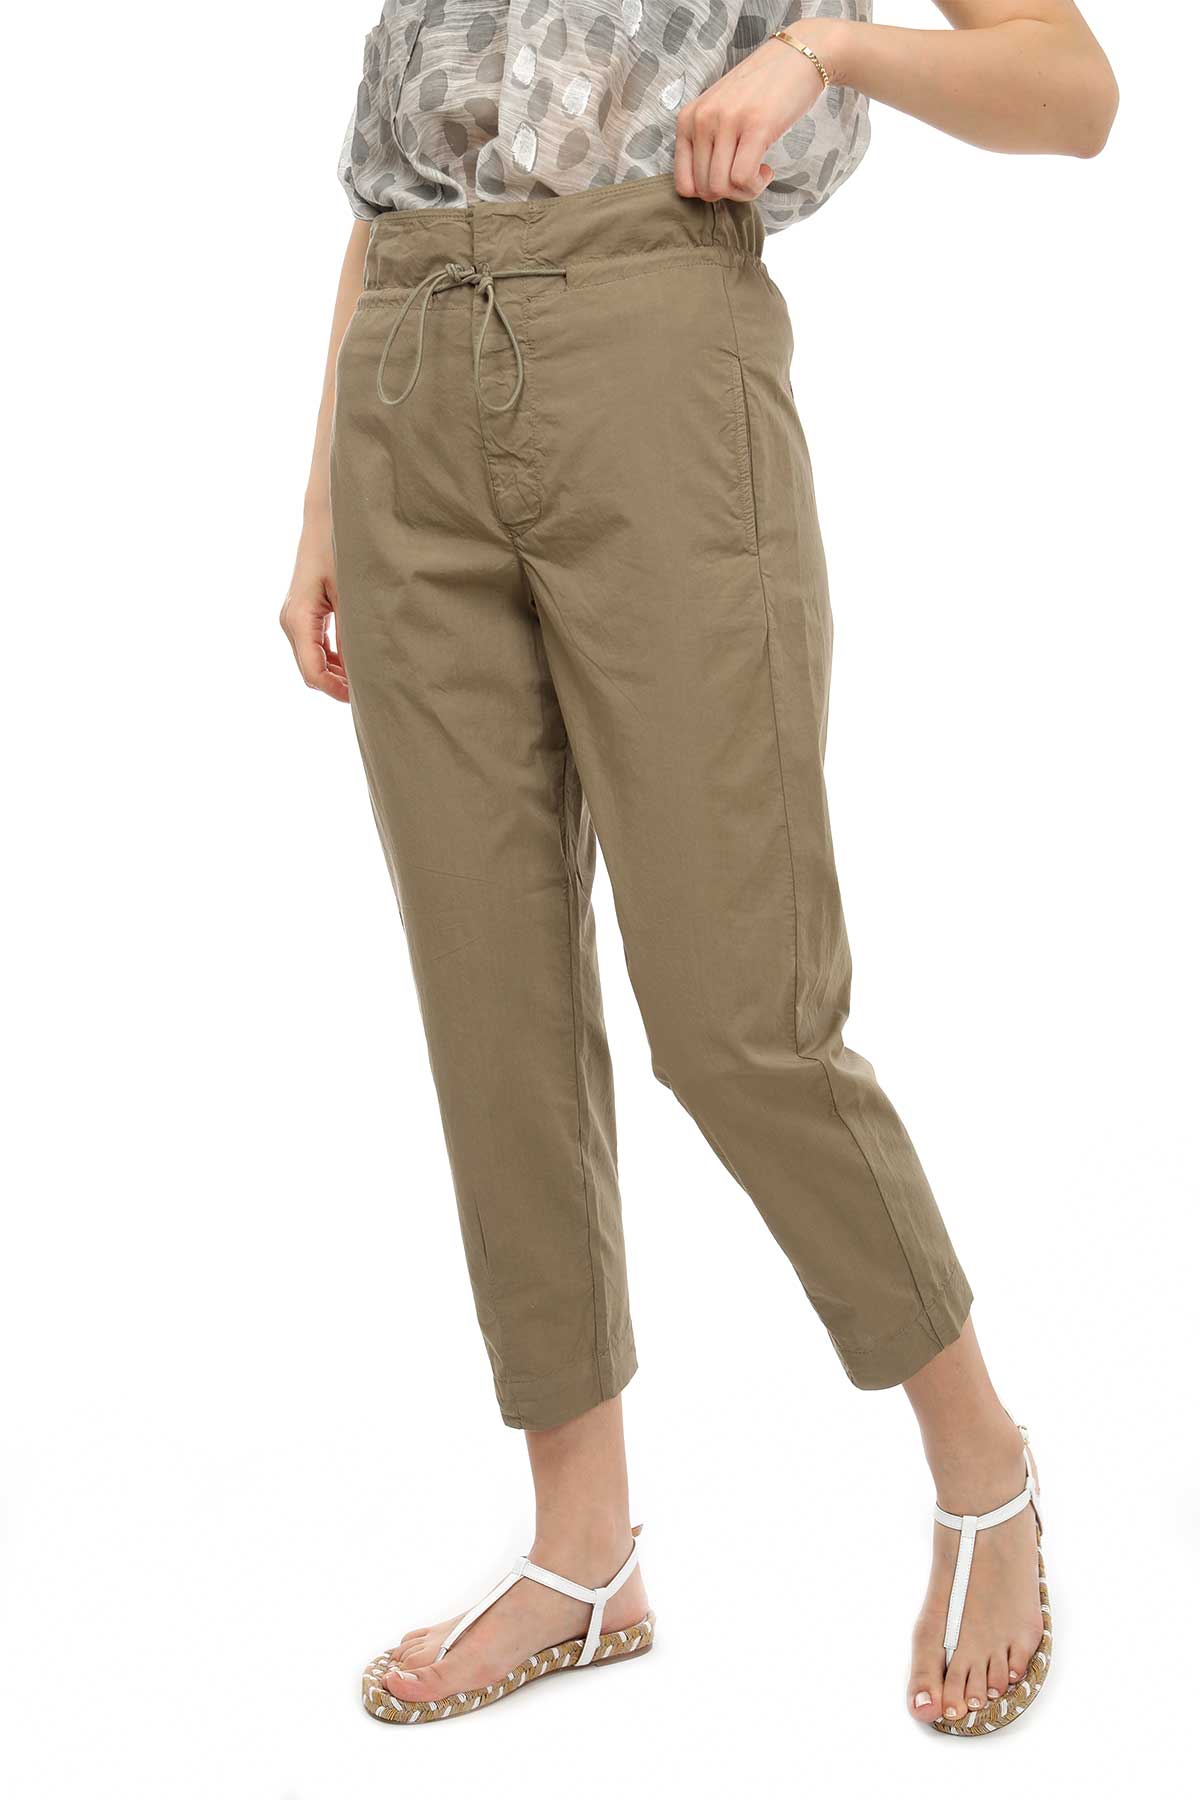 Transit Paperbag Pantolon-Libas Trendy Fashion Store